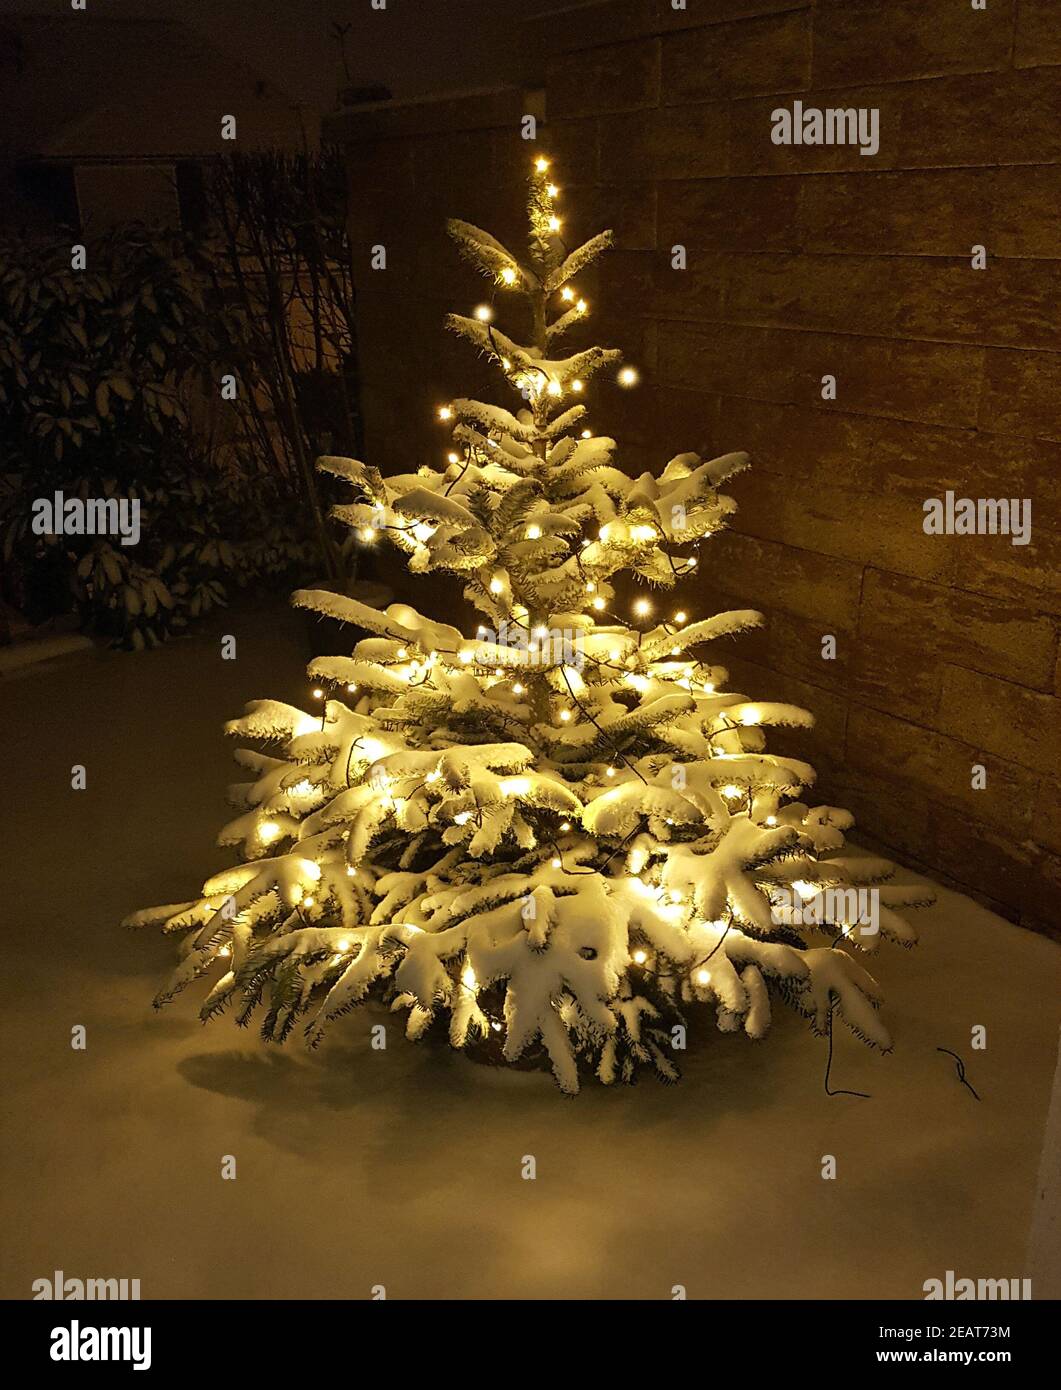 Weihnachtsbaum, Tannenbaum, Christbaum Stock Photo